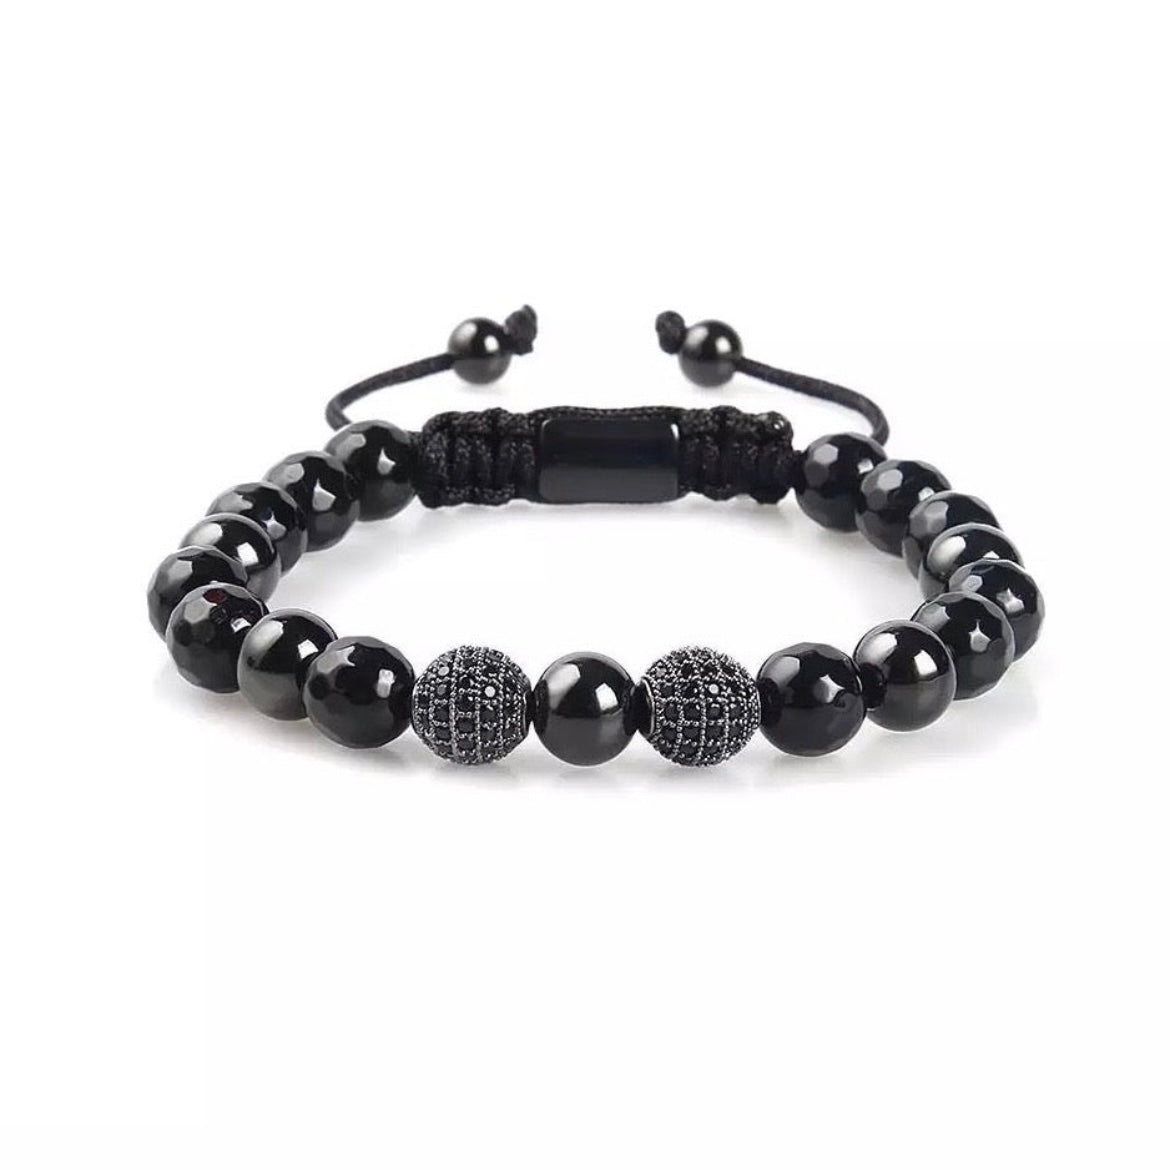 Black Onyx & Cubic Zirconia Beads Bracelet - My Harmony Tree